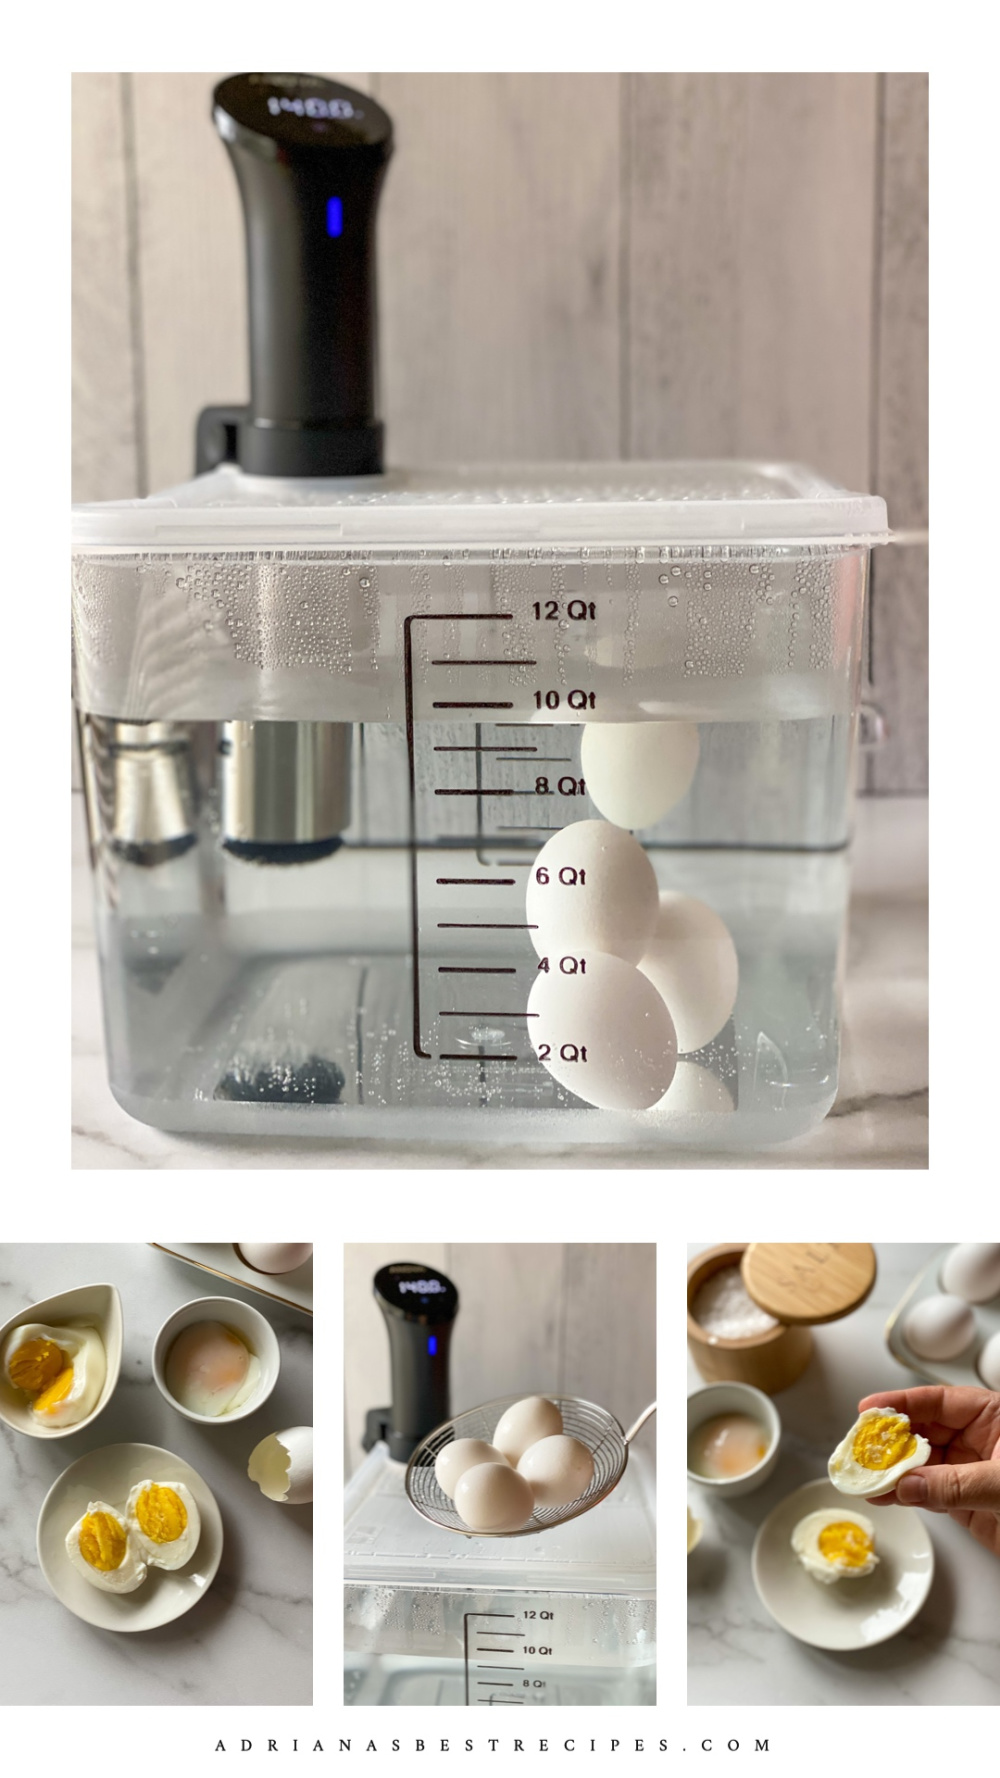 Un collage de imágenes que muestra la técnica de cómo cocinar huevos con un circulador de inmersión o la técnica sous vide